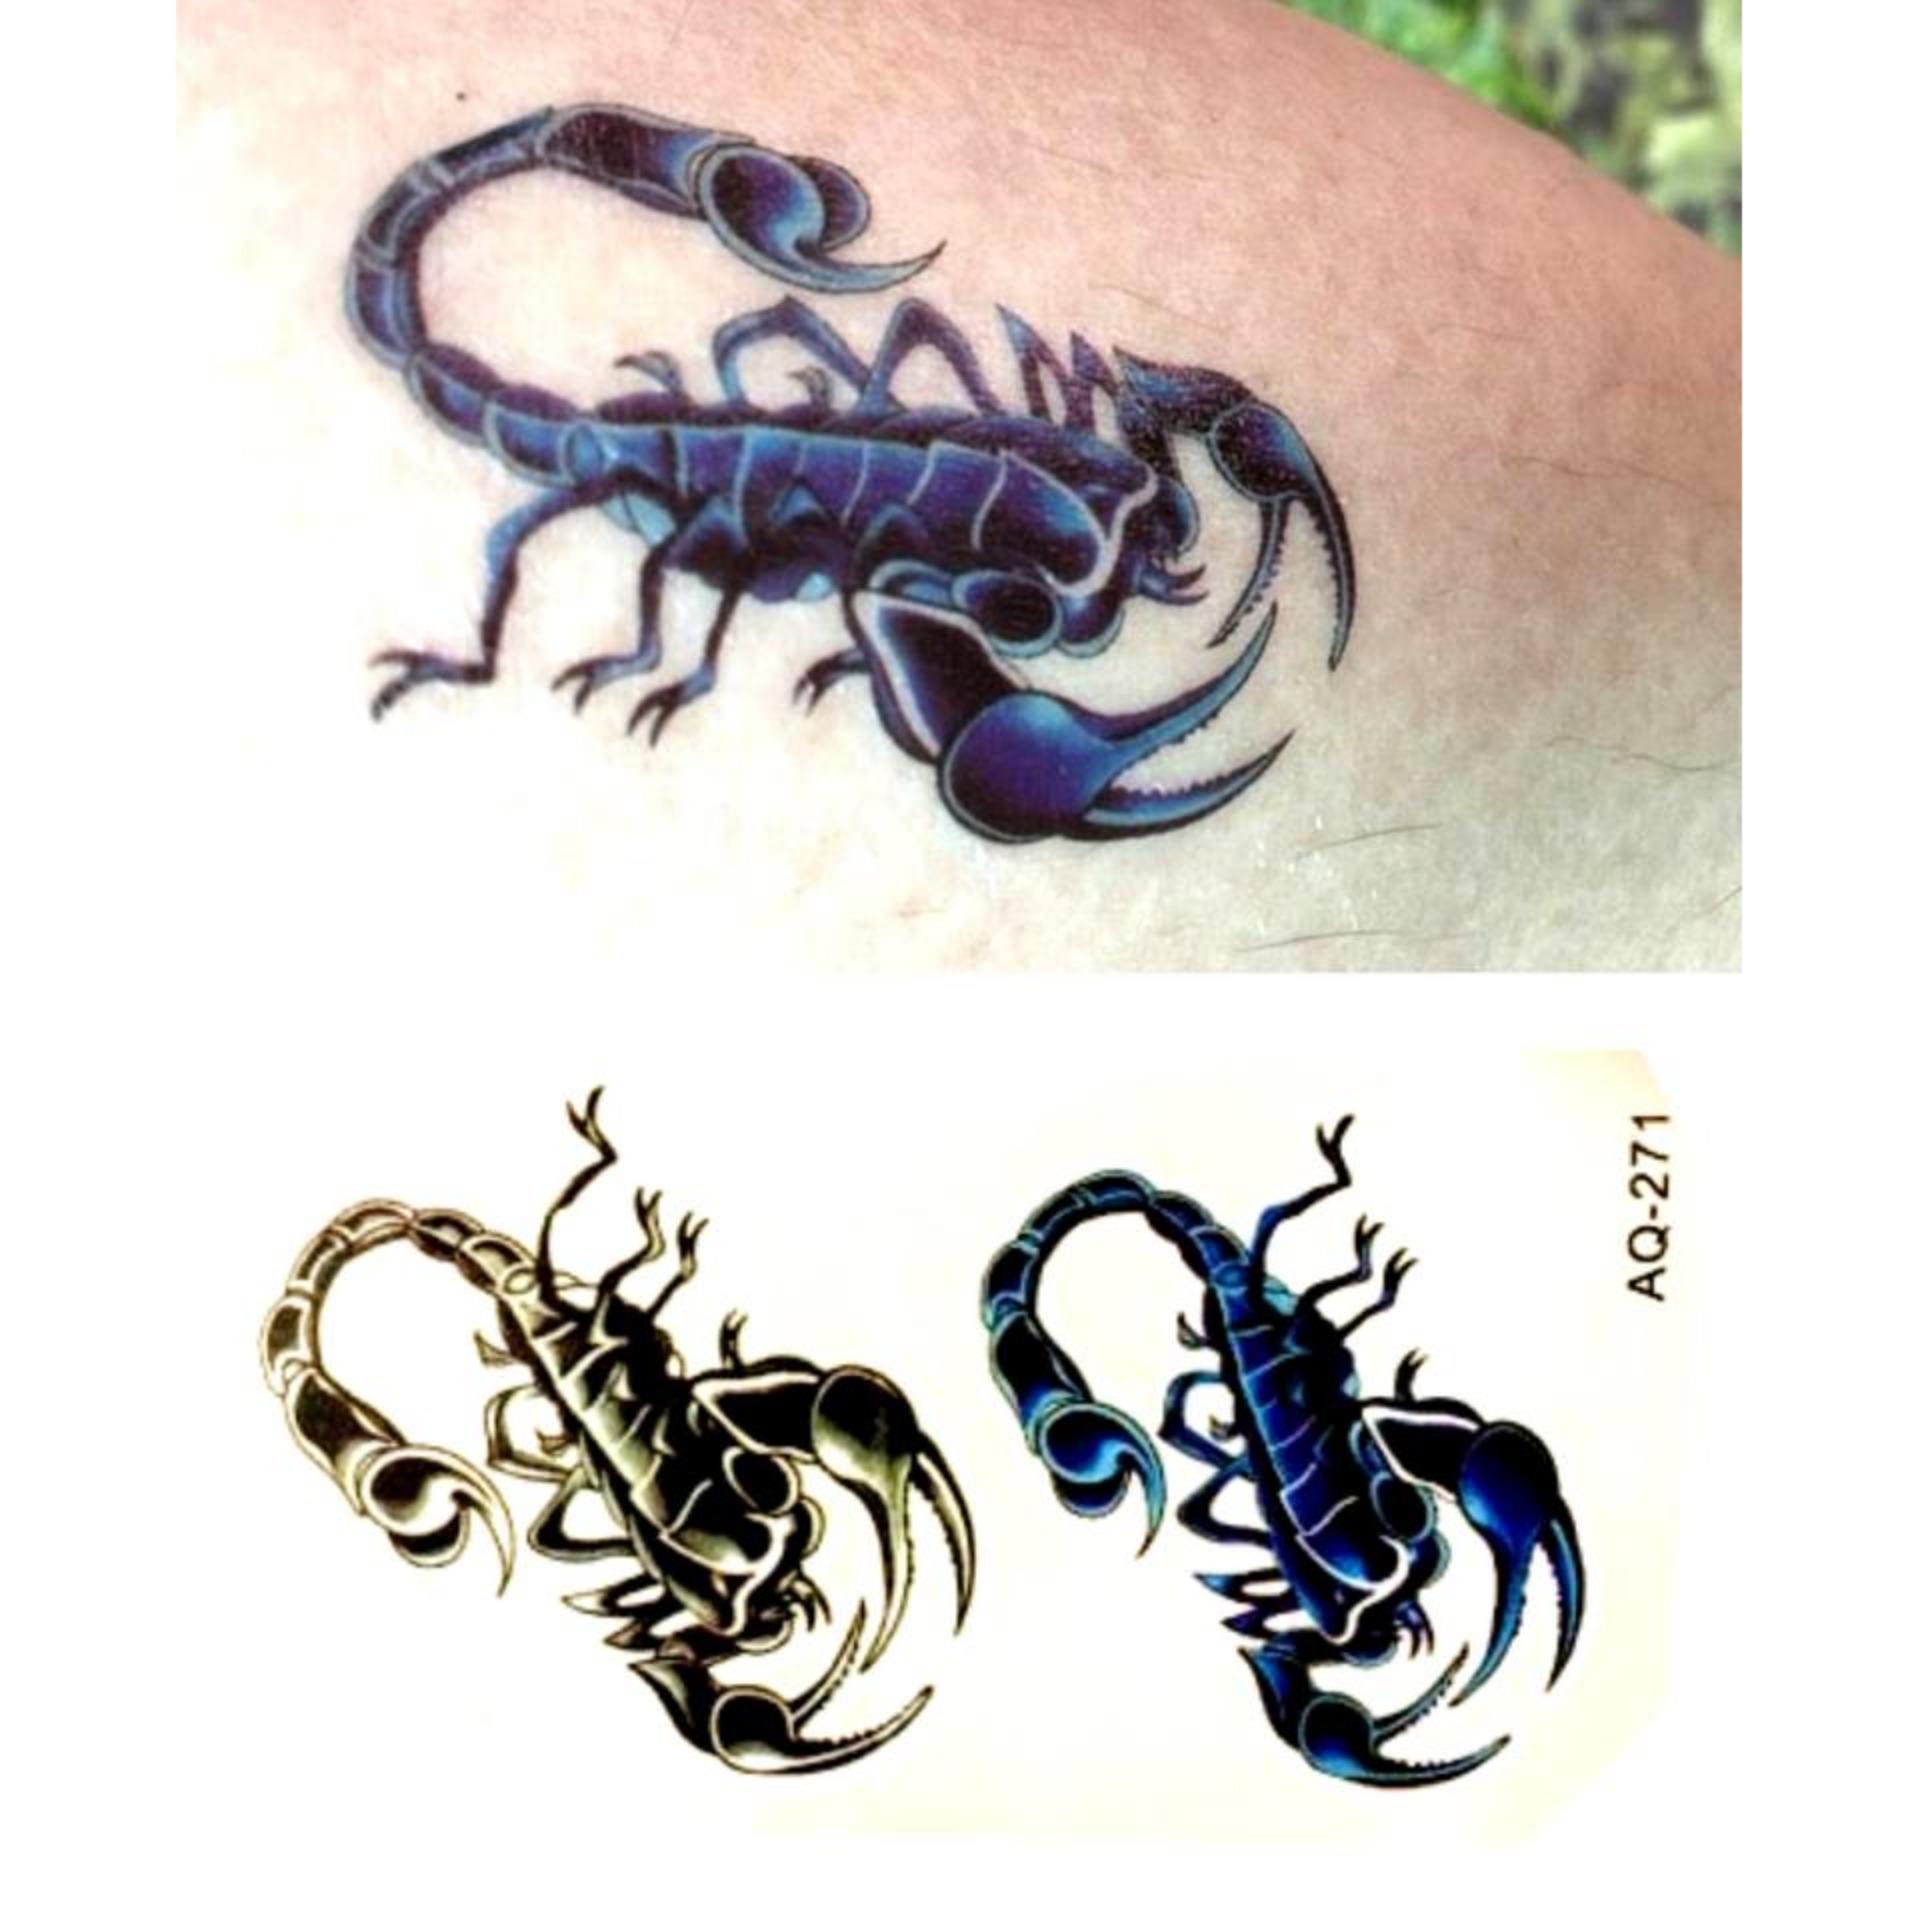 Với các mẫu tattoo bọ cạp giá rẻ, bạn sẽ không phải lo lắng về chi phí khi muốn có một bức tranh xăm đẹp trên cơ thể. Hãy khám phá những họa tiết độc đáo và đẹp mắt của chúng tôi để tạo nên phong cách riêng cho bạn.